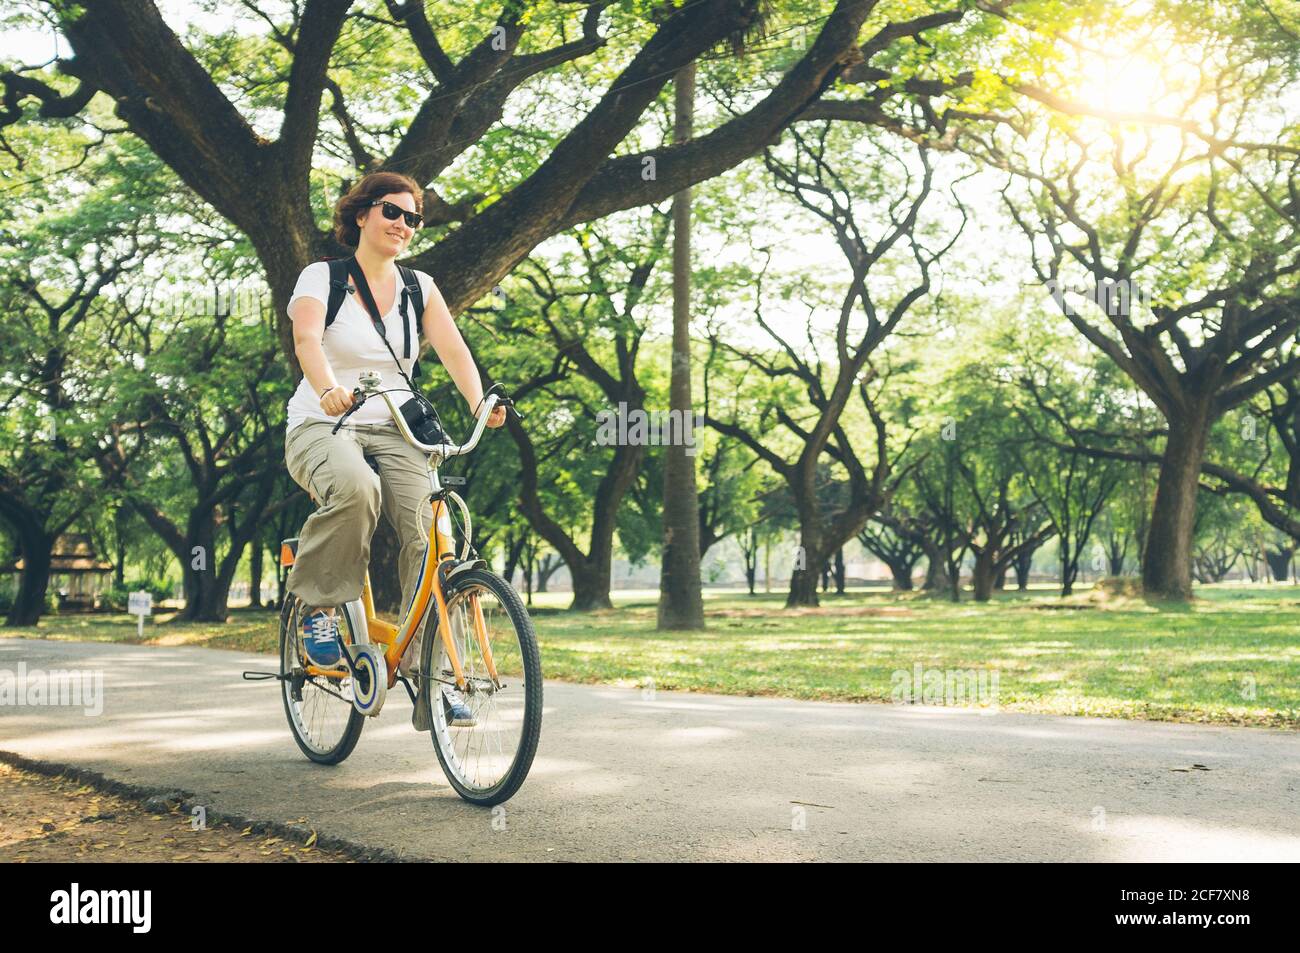 Ziemlich weiblich in casual Outfit Reiten moderne Fahrrad auf dem Weg In der Nähe von grünen Bäumen im schönen Park an sonnigen Tag in Thailand Stockfoto